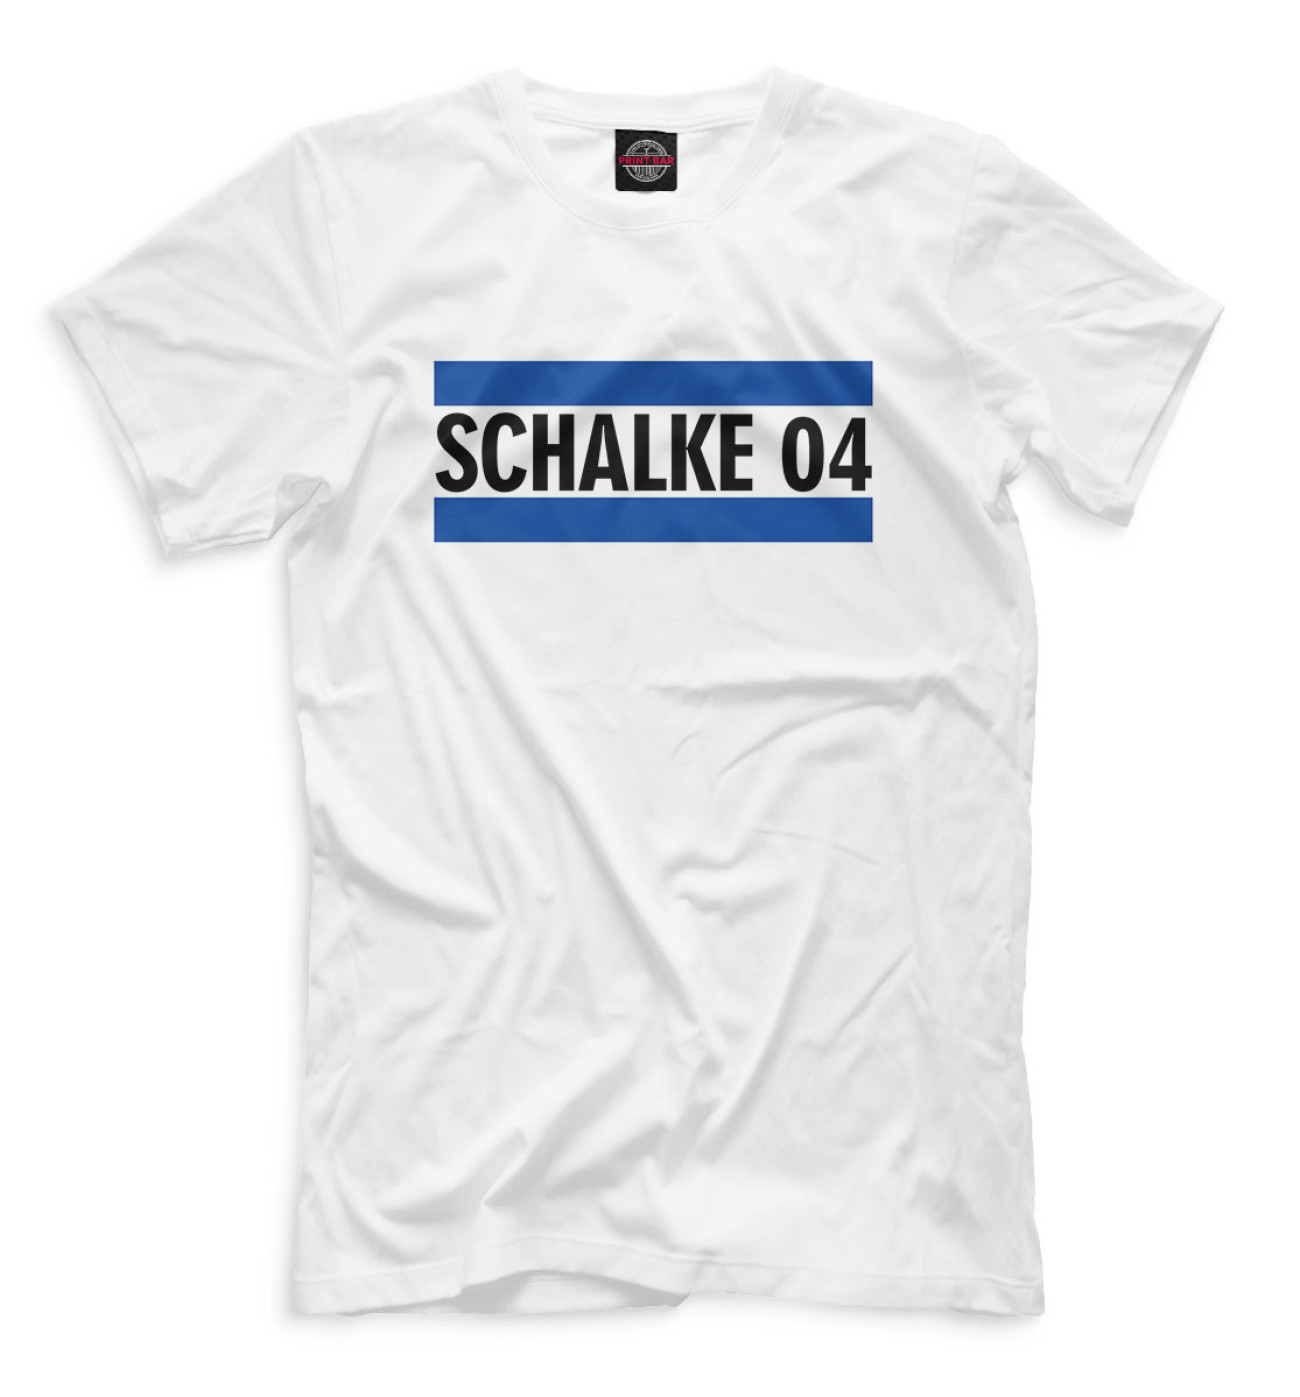 Мужская Футболка Schalke 04, артикул: FTO-130011-fut-2